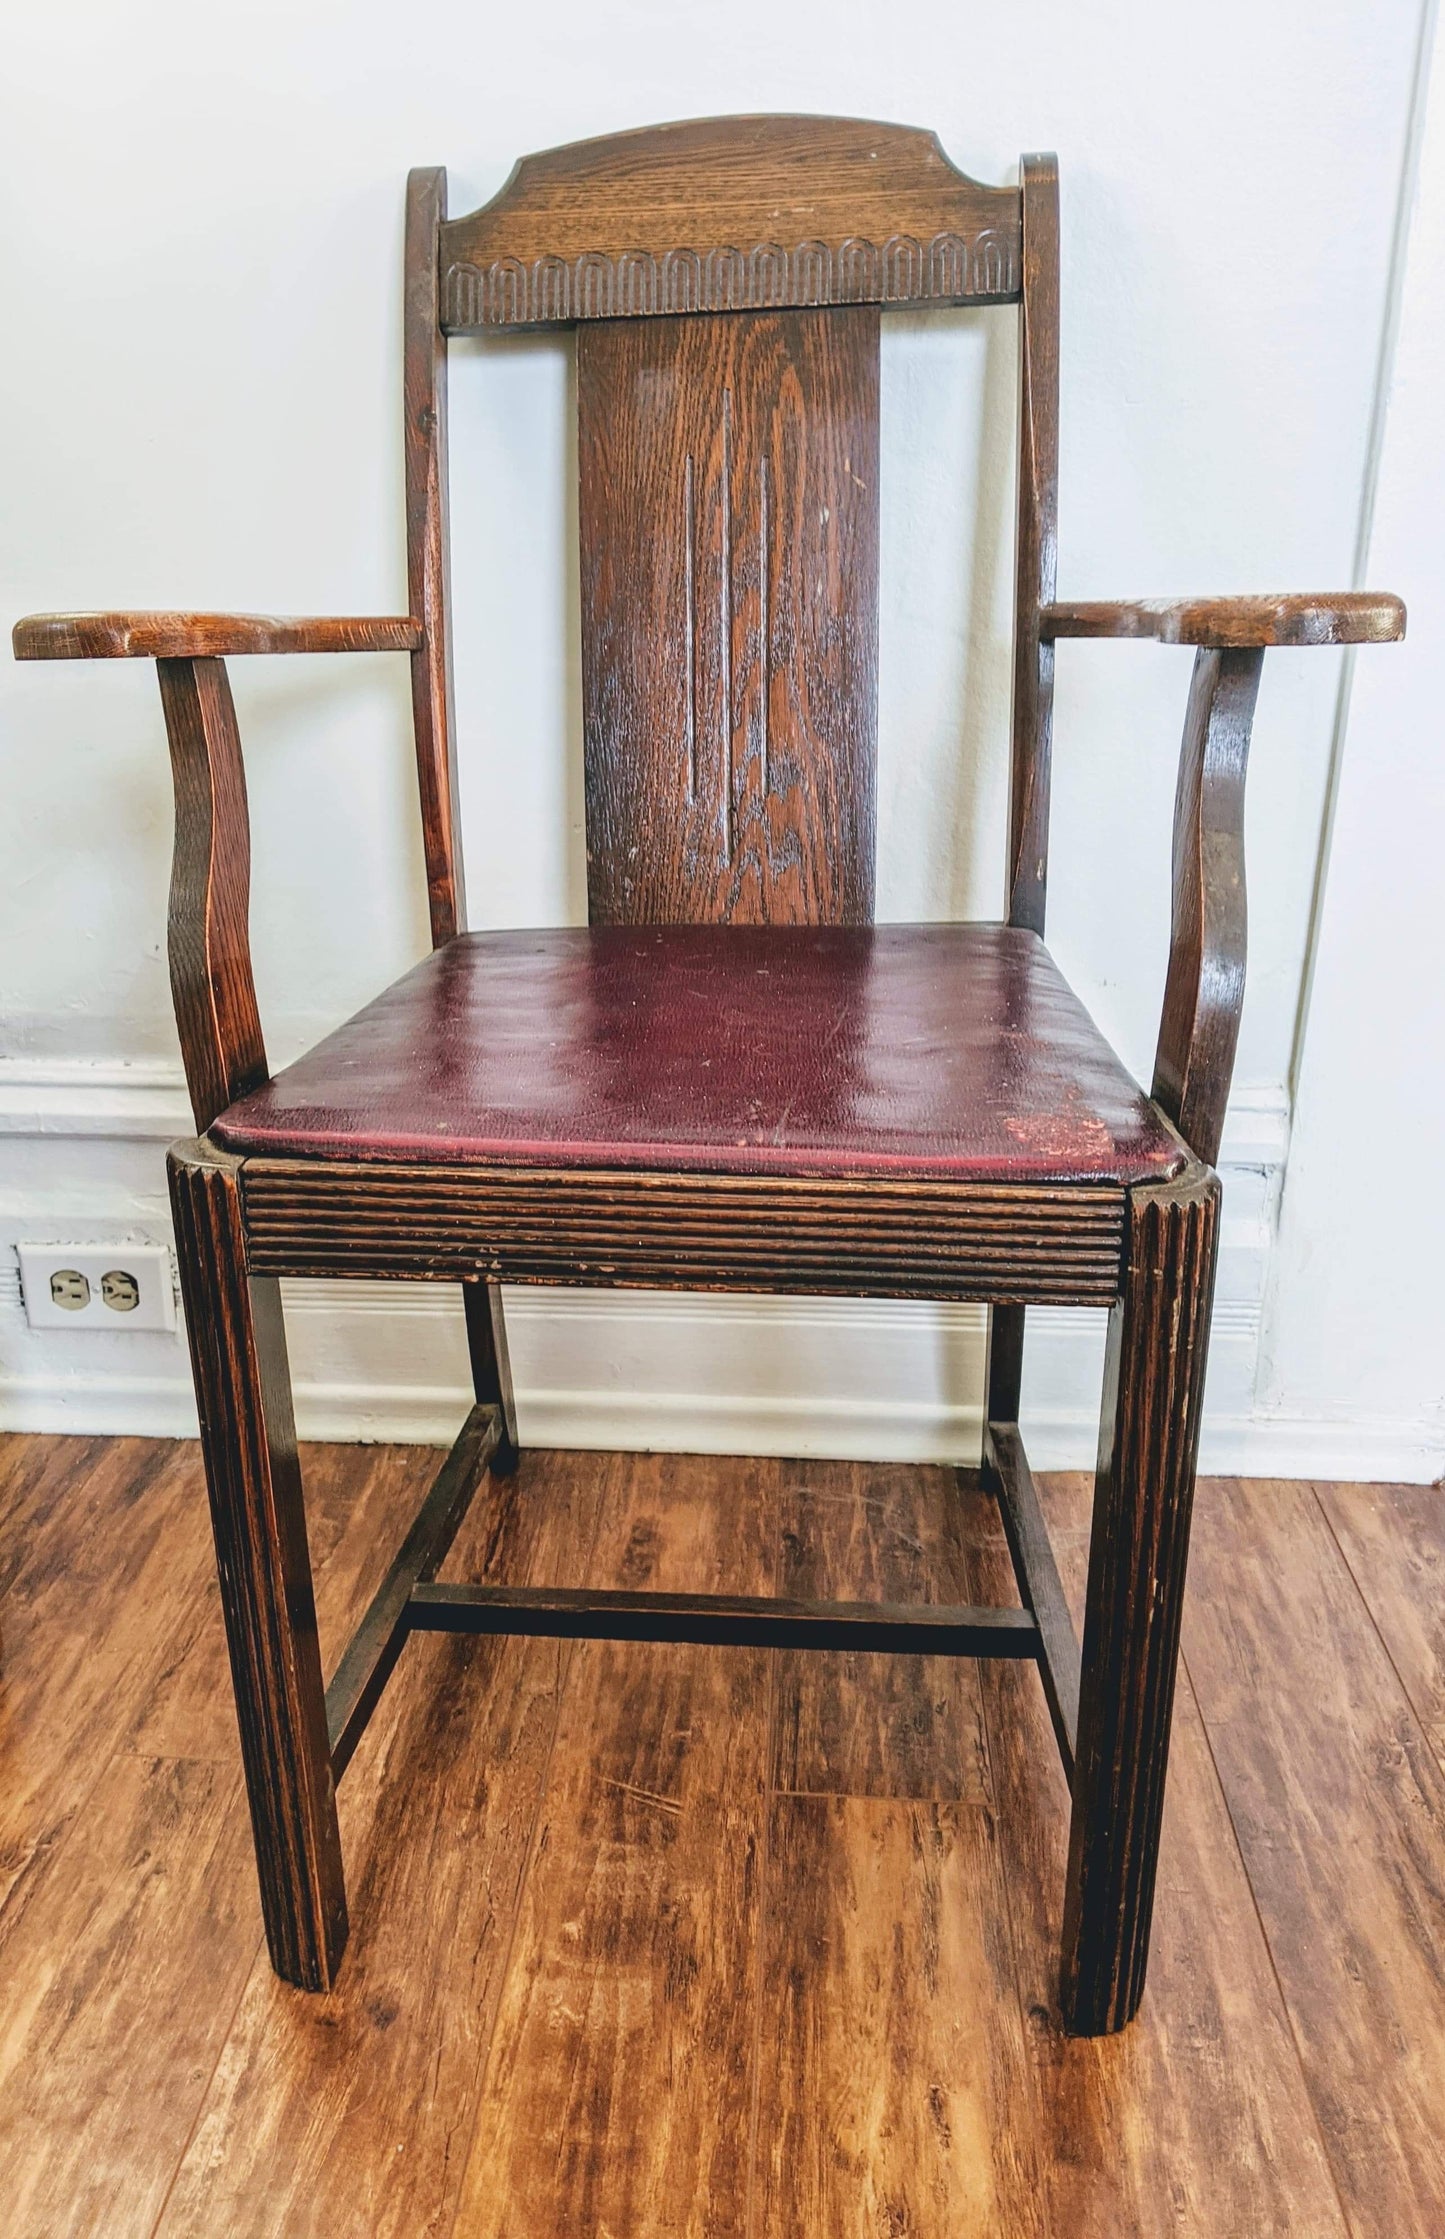 The Hacienda Chair